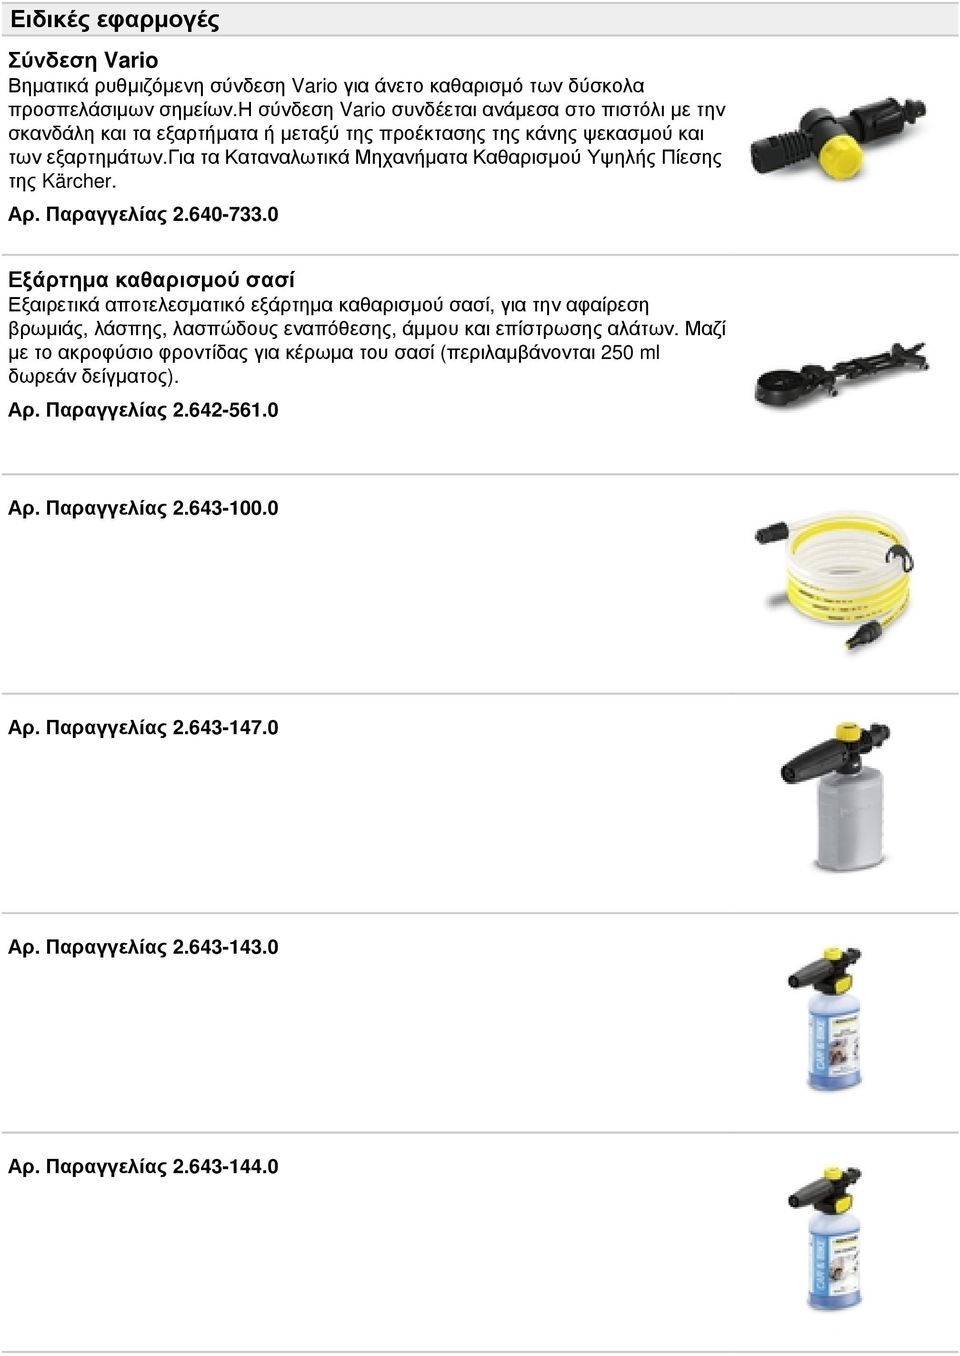 για τα Καταναλωτικά Μηχανήματα Καθαρισμού Υψηλής Πίεσης της Kärcher. Αρ. Παραγγελίας 2.640-733.